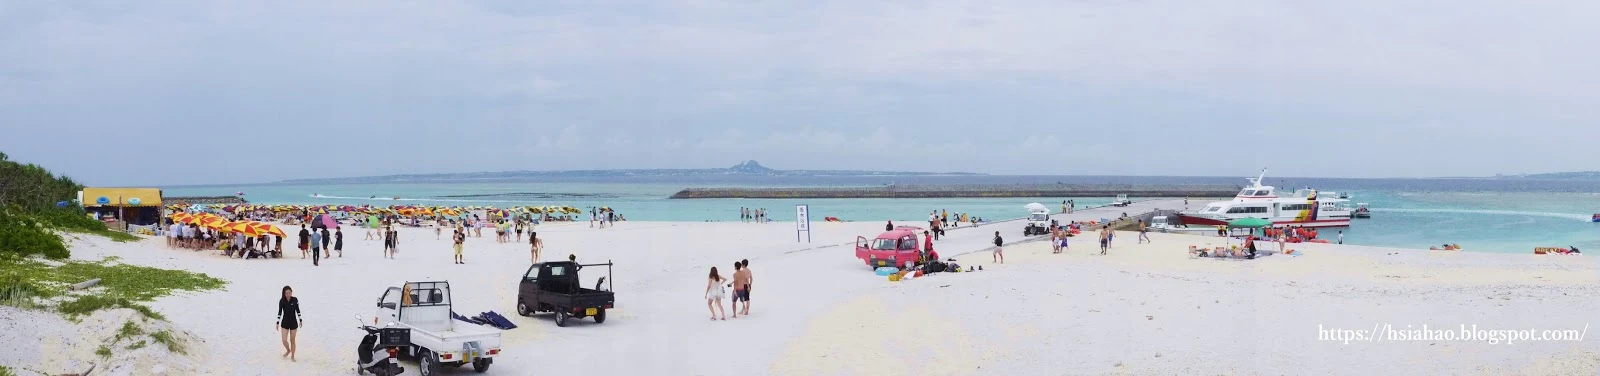 沖繩-景點-水納島-水納海灘-水納ビーチ-Minna-Beach-推薦-自由行-旅遊-Okinawa